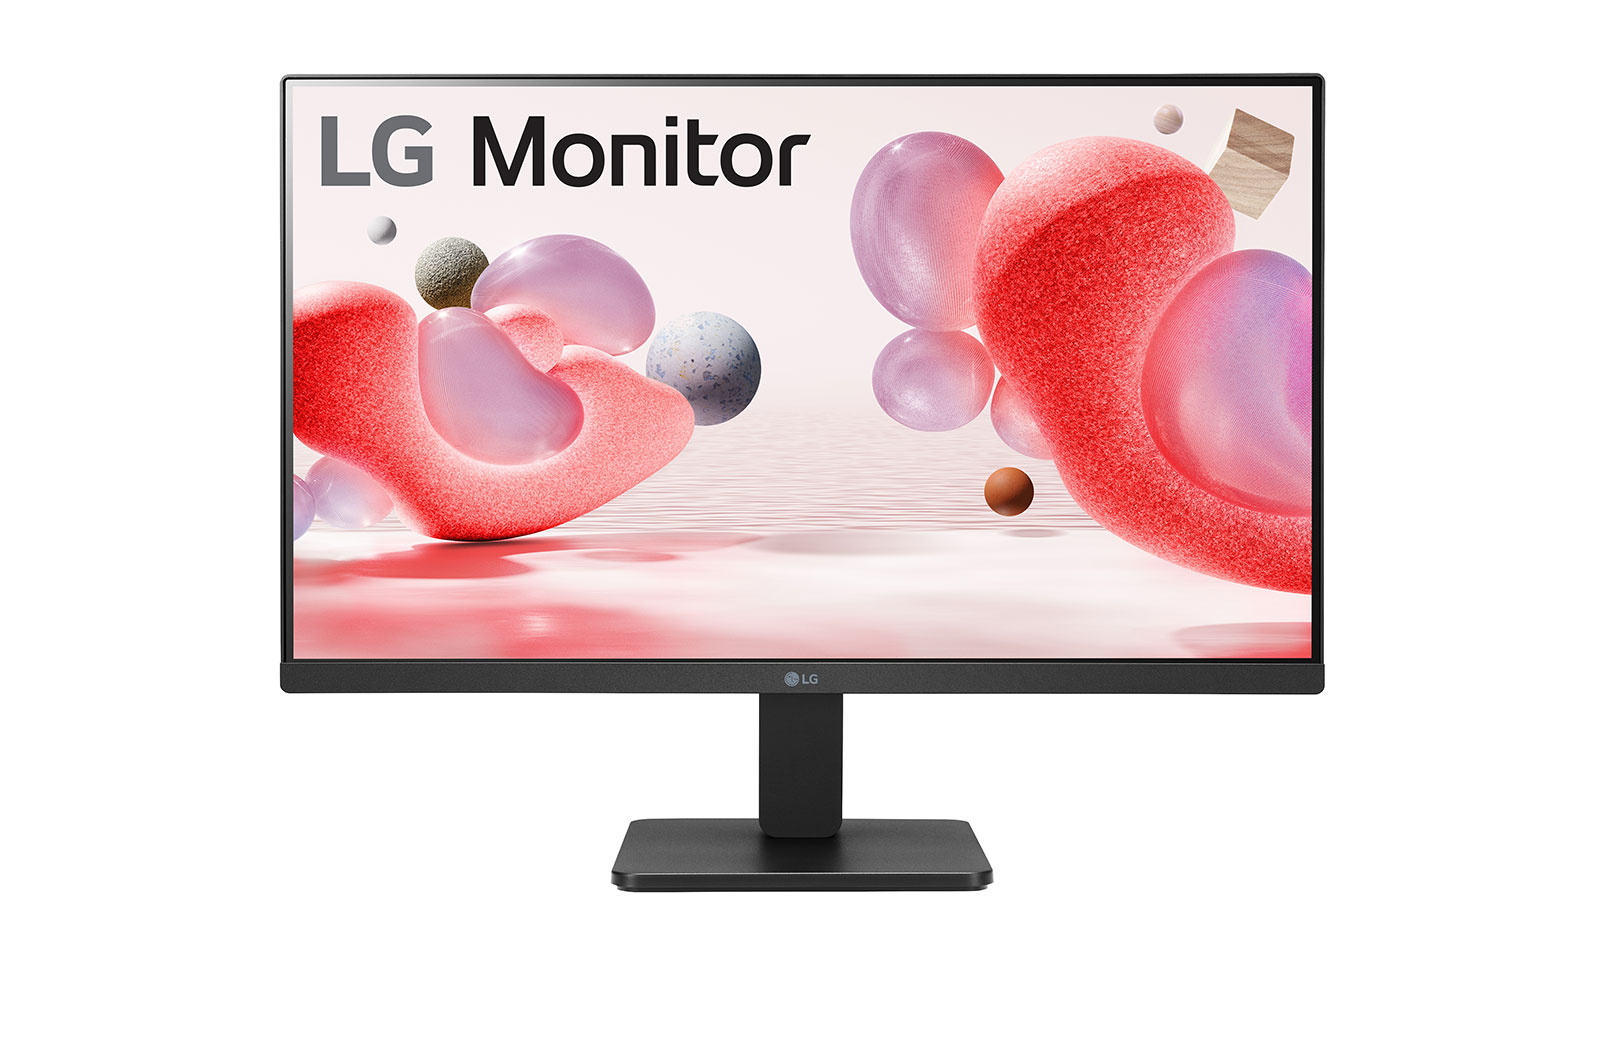 LG Monitor TV 24 pulgadas